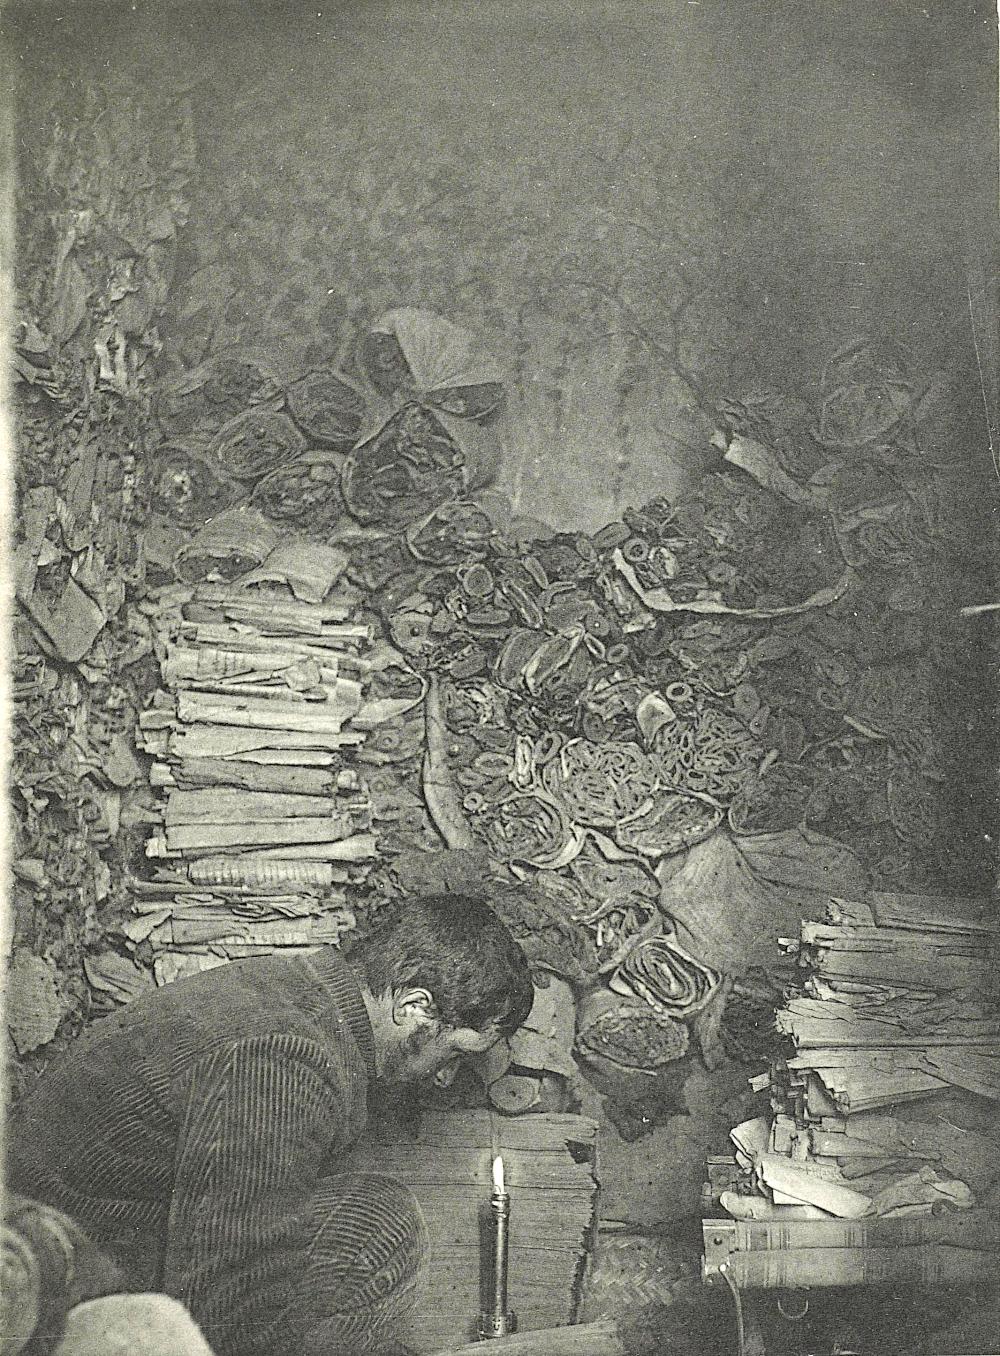 Paul Pelliot sorting manuscripts inside cave 17 in 1907 at Dunhuang